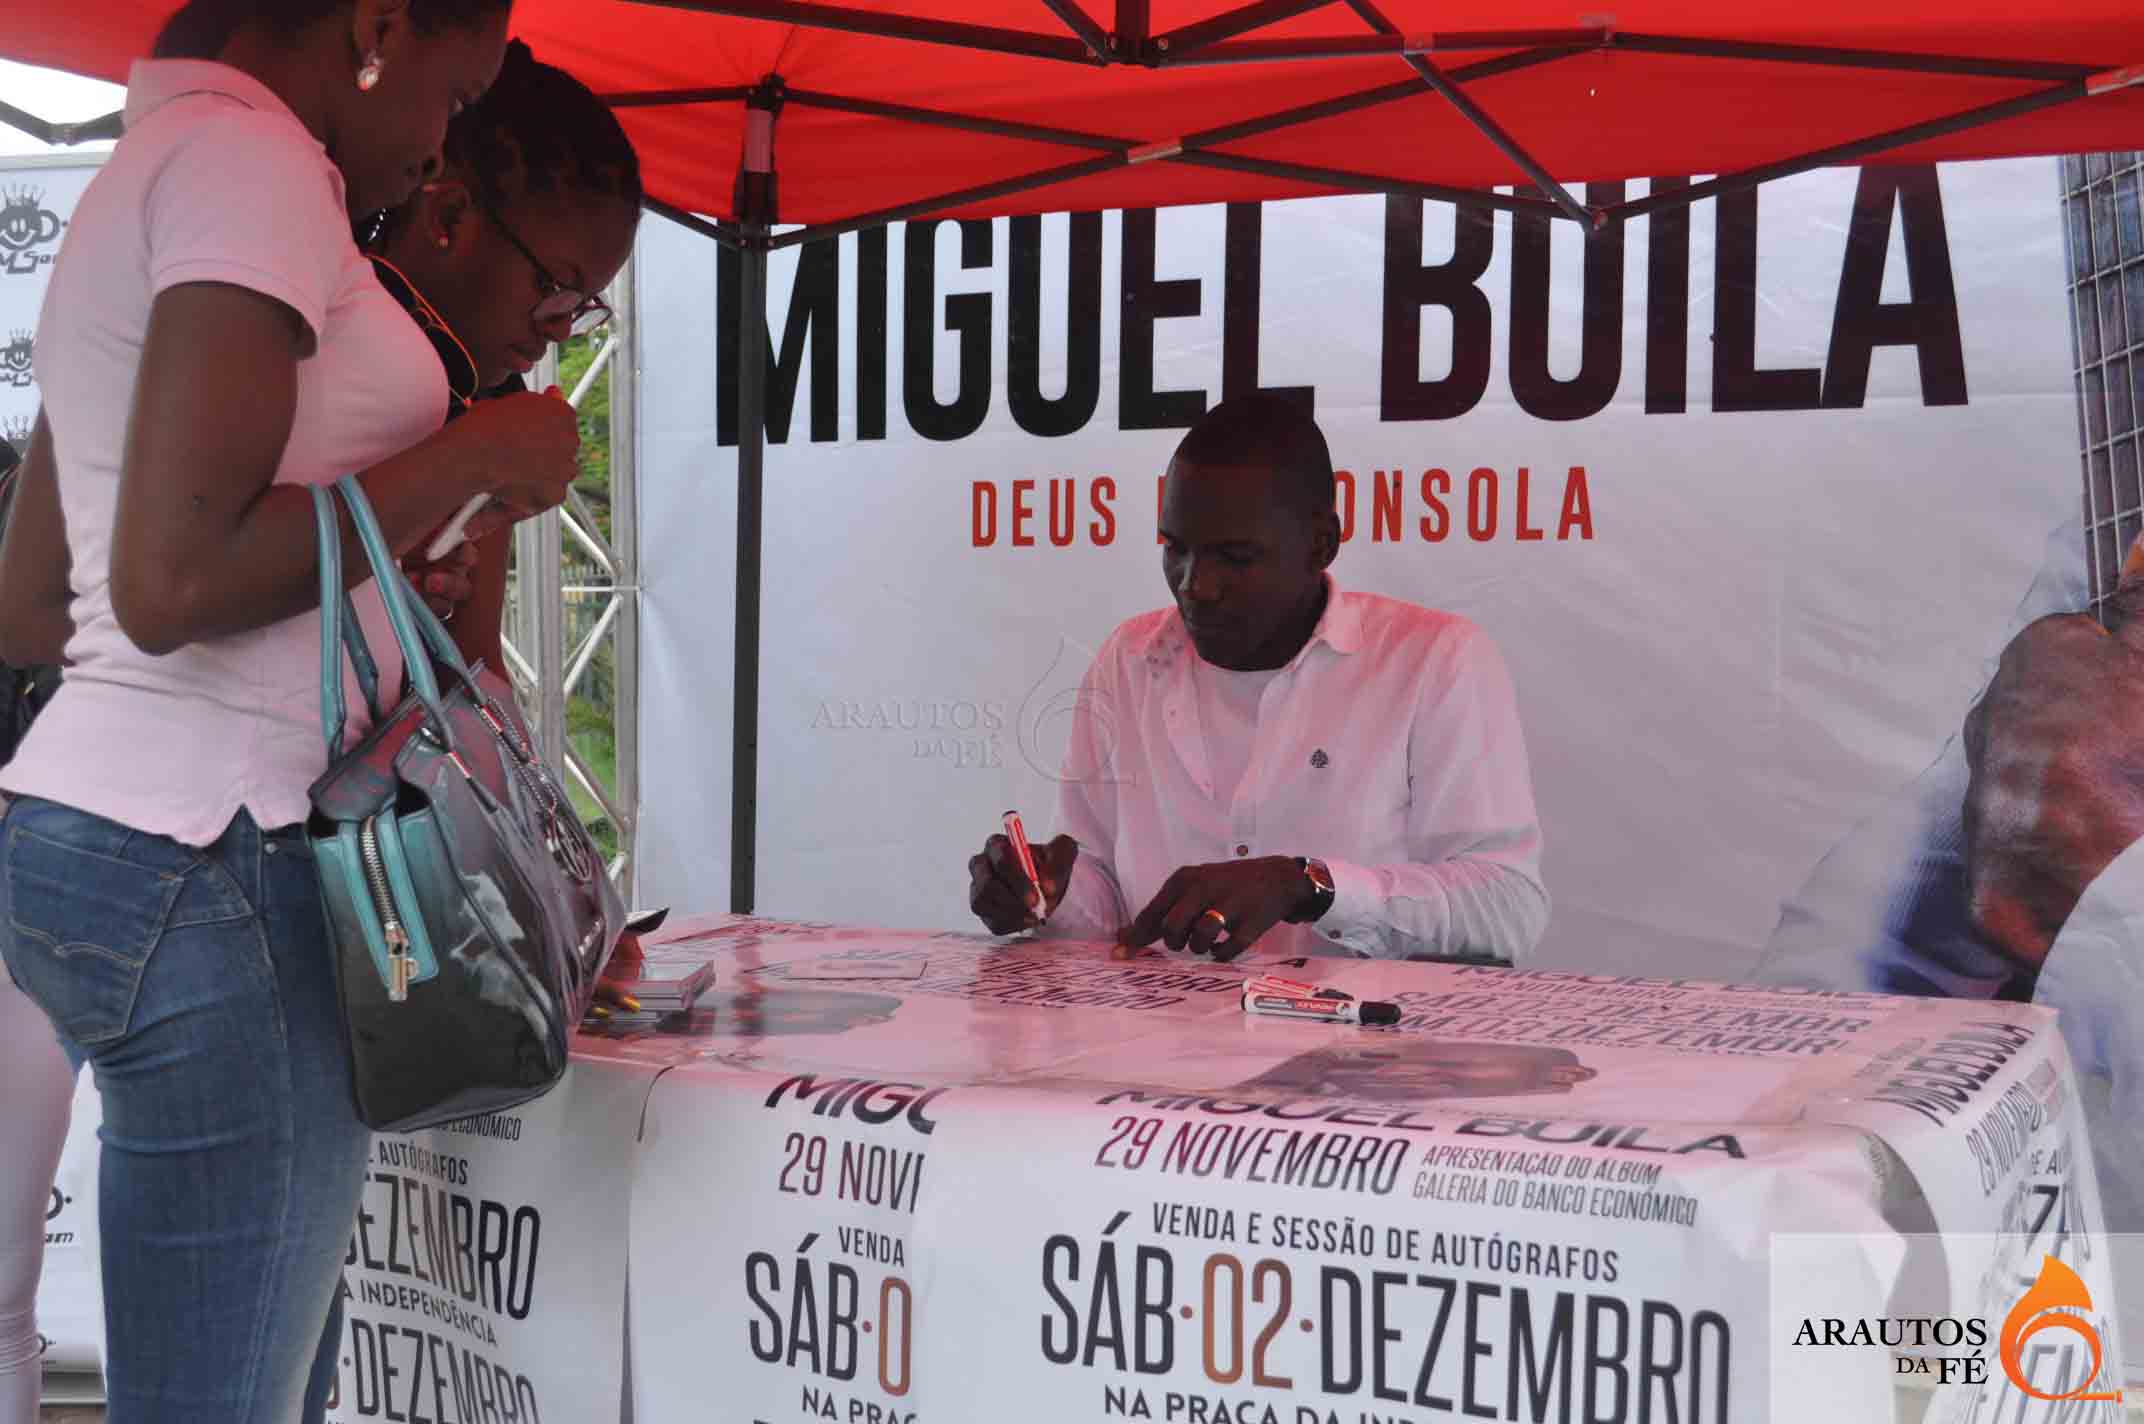 Miguel Buila está a autografar o seu mais recente CD